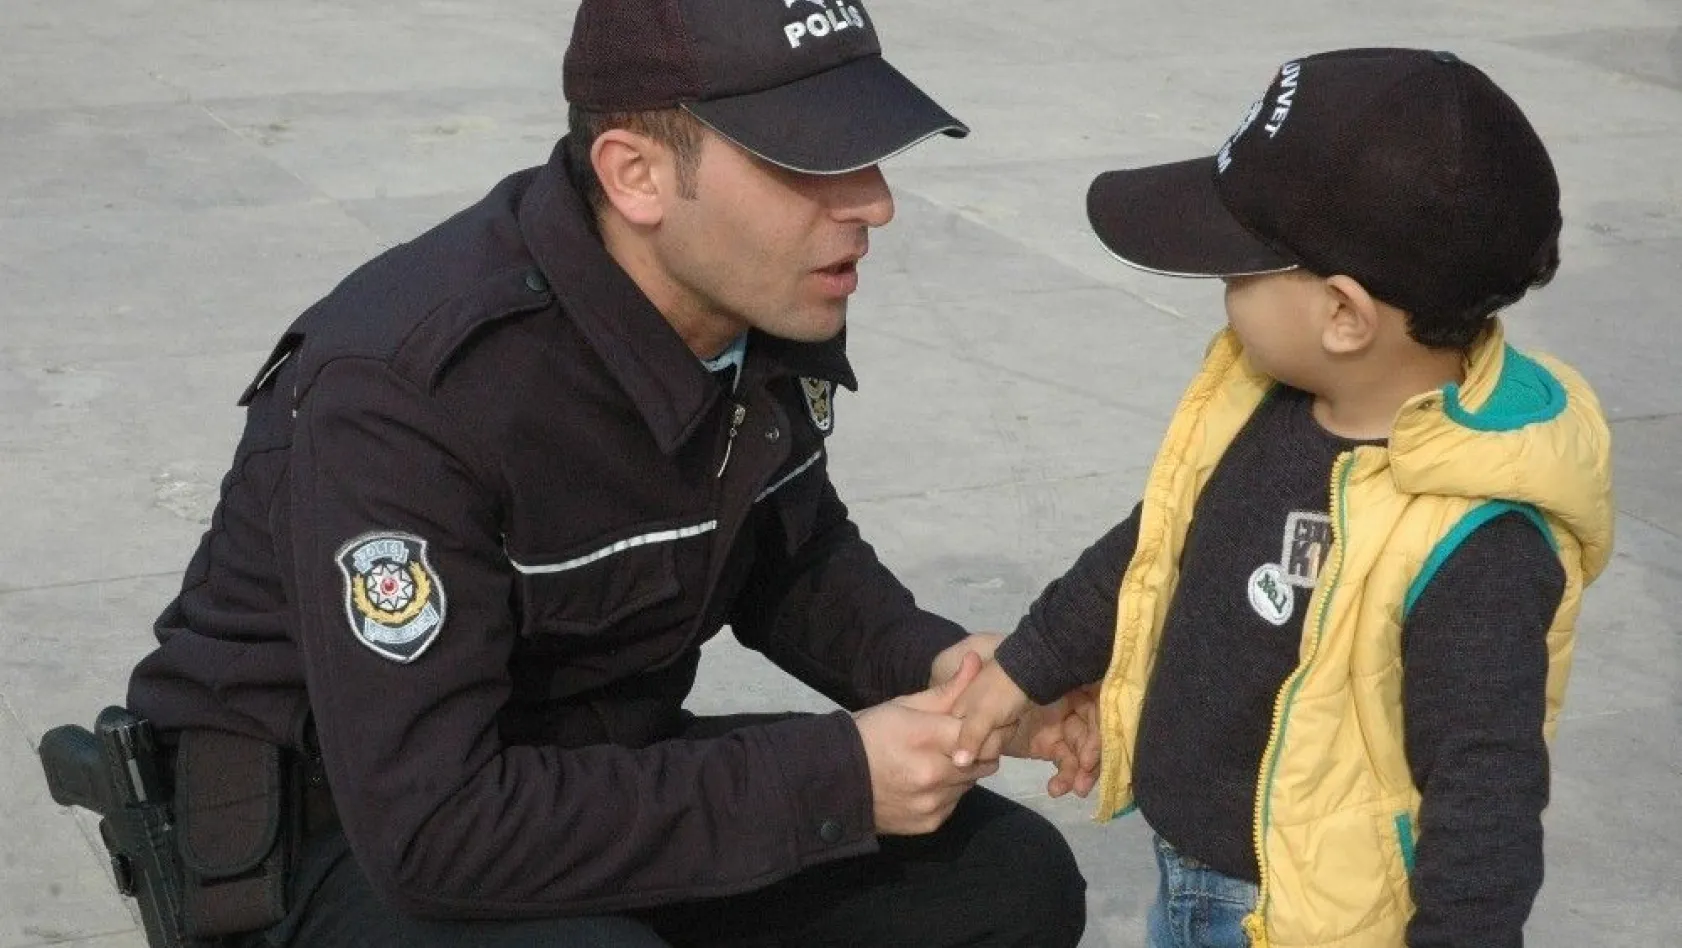 2 yaşındaki Baki'nin hayali polis olmak
